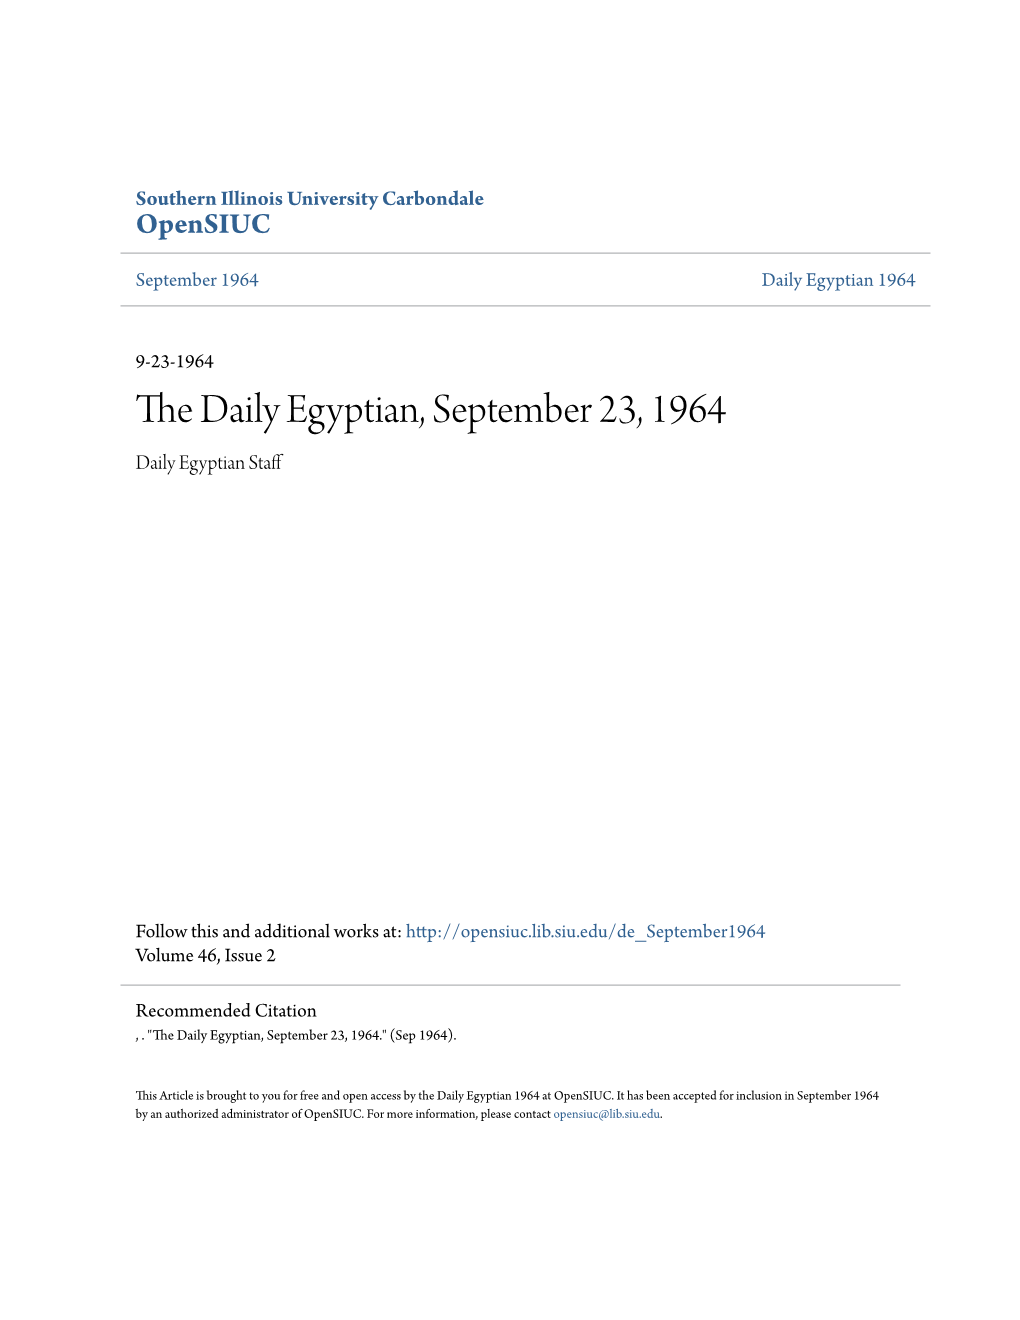 The Daily Egyptian, September 23, 1964